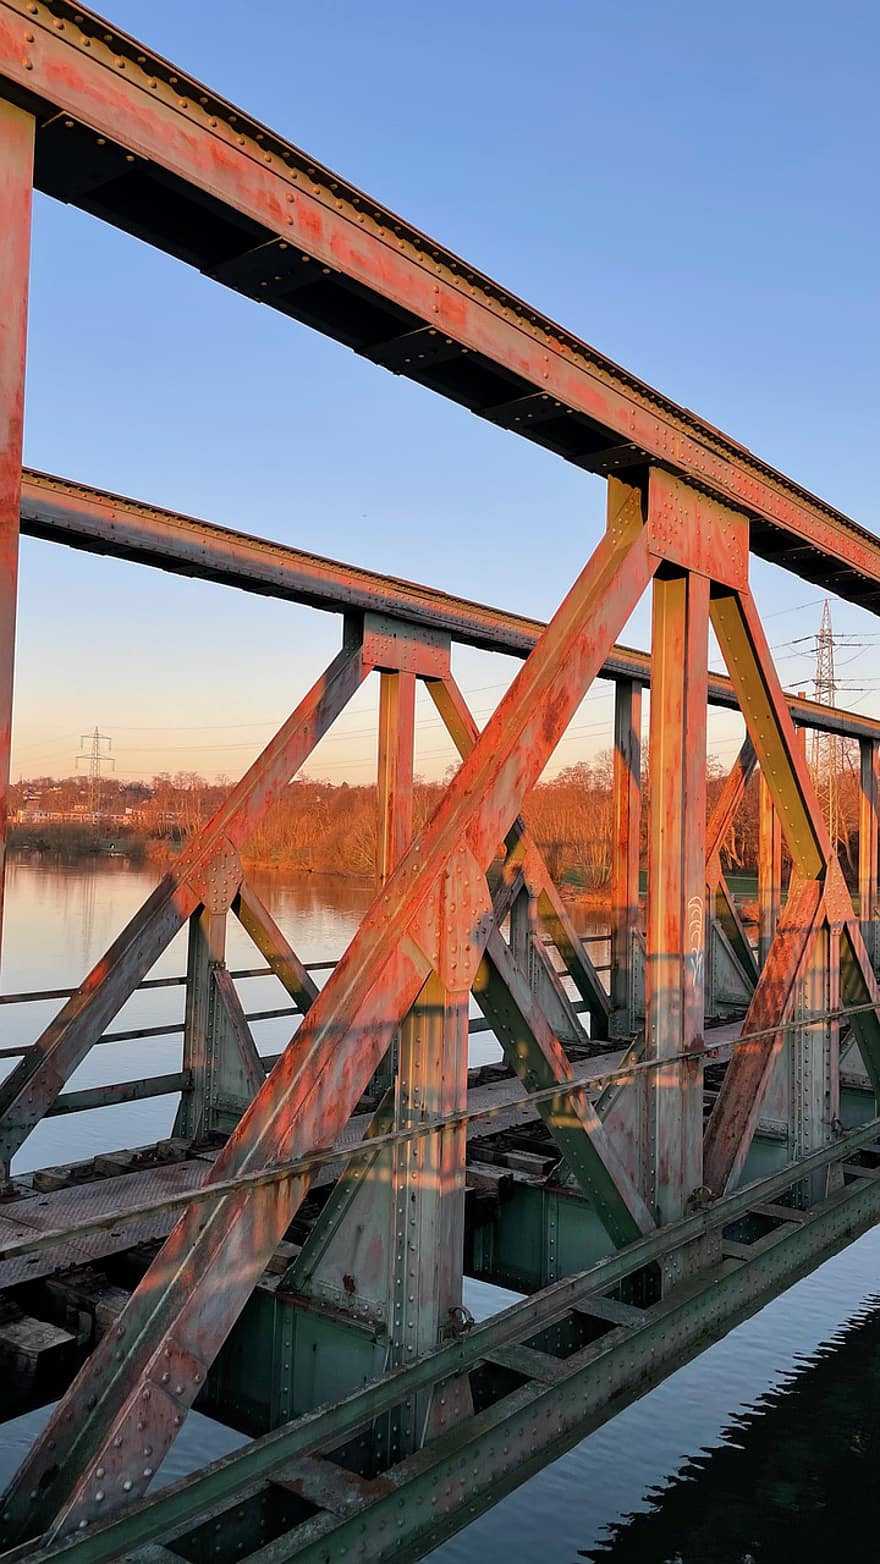 جسر ، جسر فولاذي ، جسر سكة حديد ، الرور ، تدفق ، بوخوم ، جسر قديم ، صناعة ، ماء ، هندسة معمارية ، صلب